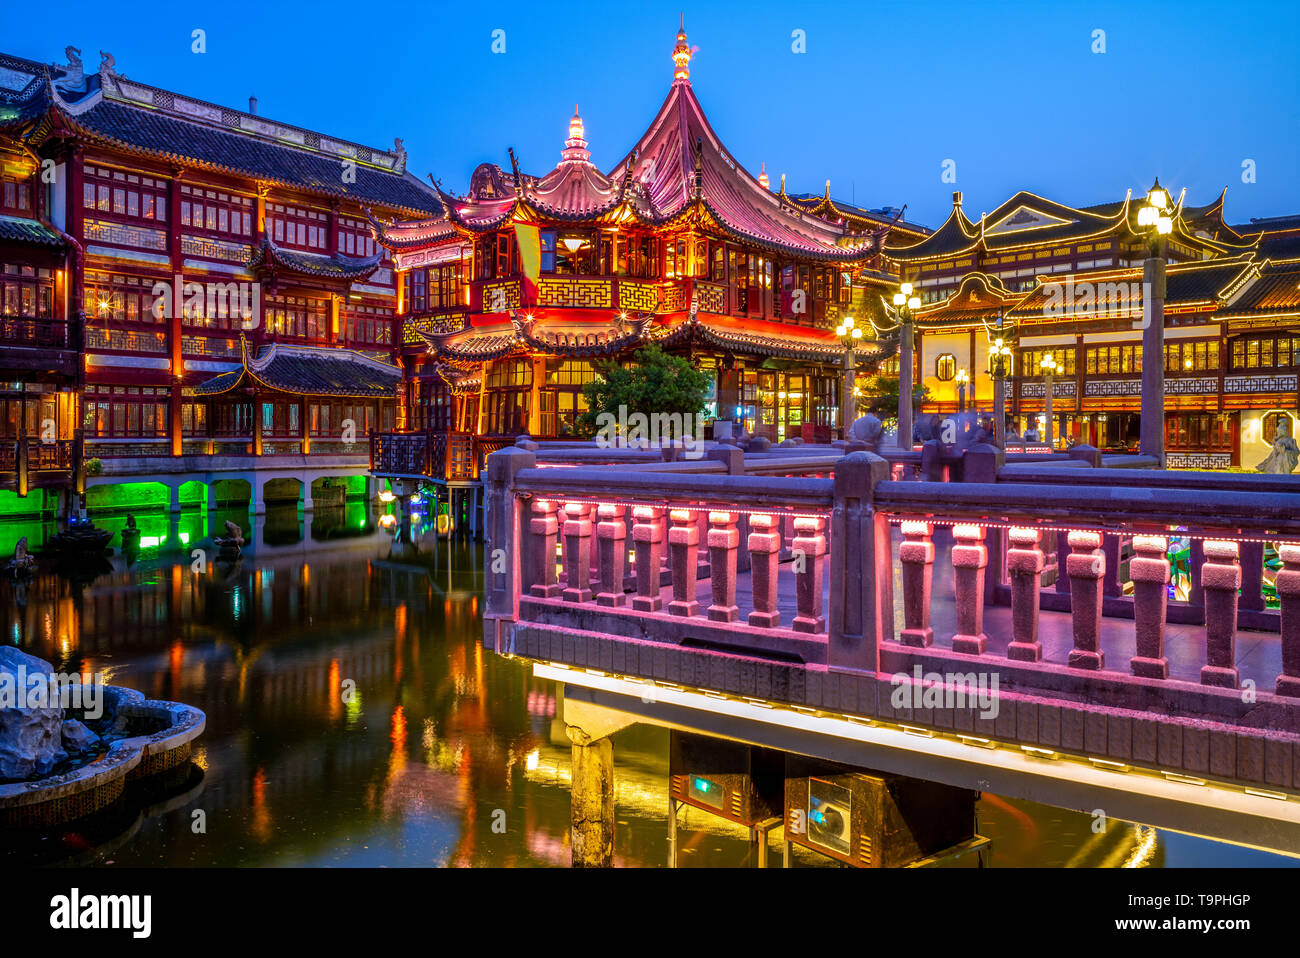 night view of yu yuan garden in shanghai, china Stock Photo